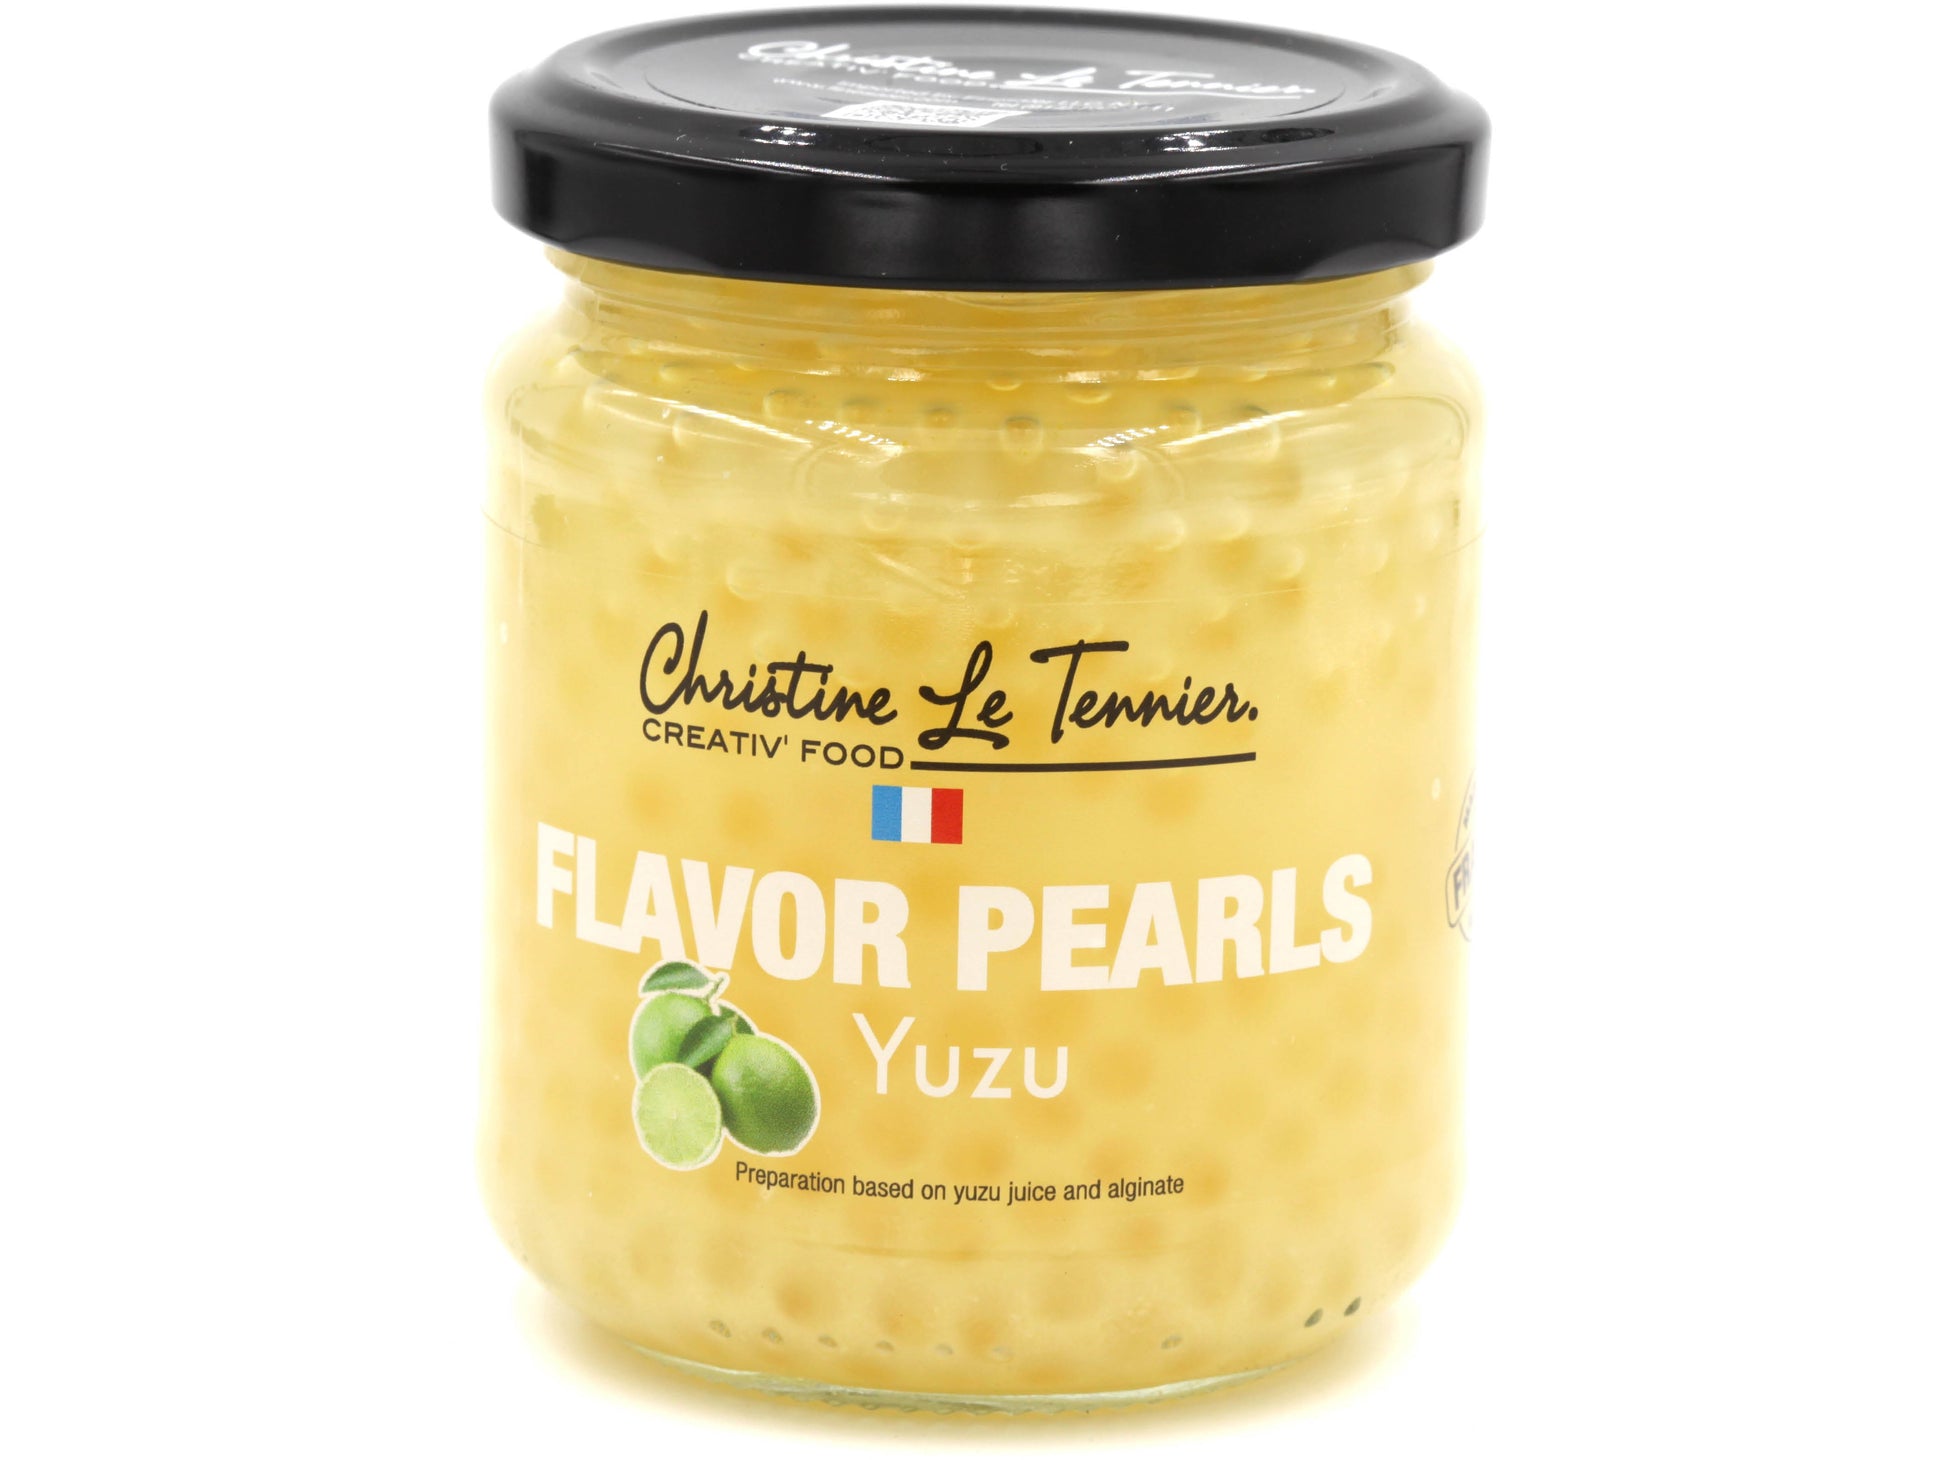 christine le tennier flavored pearls, 7oz jar, france yuzu